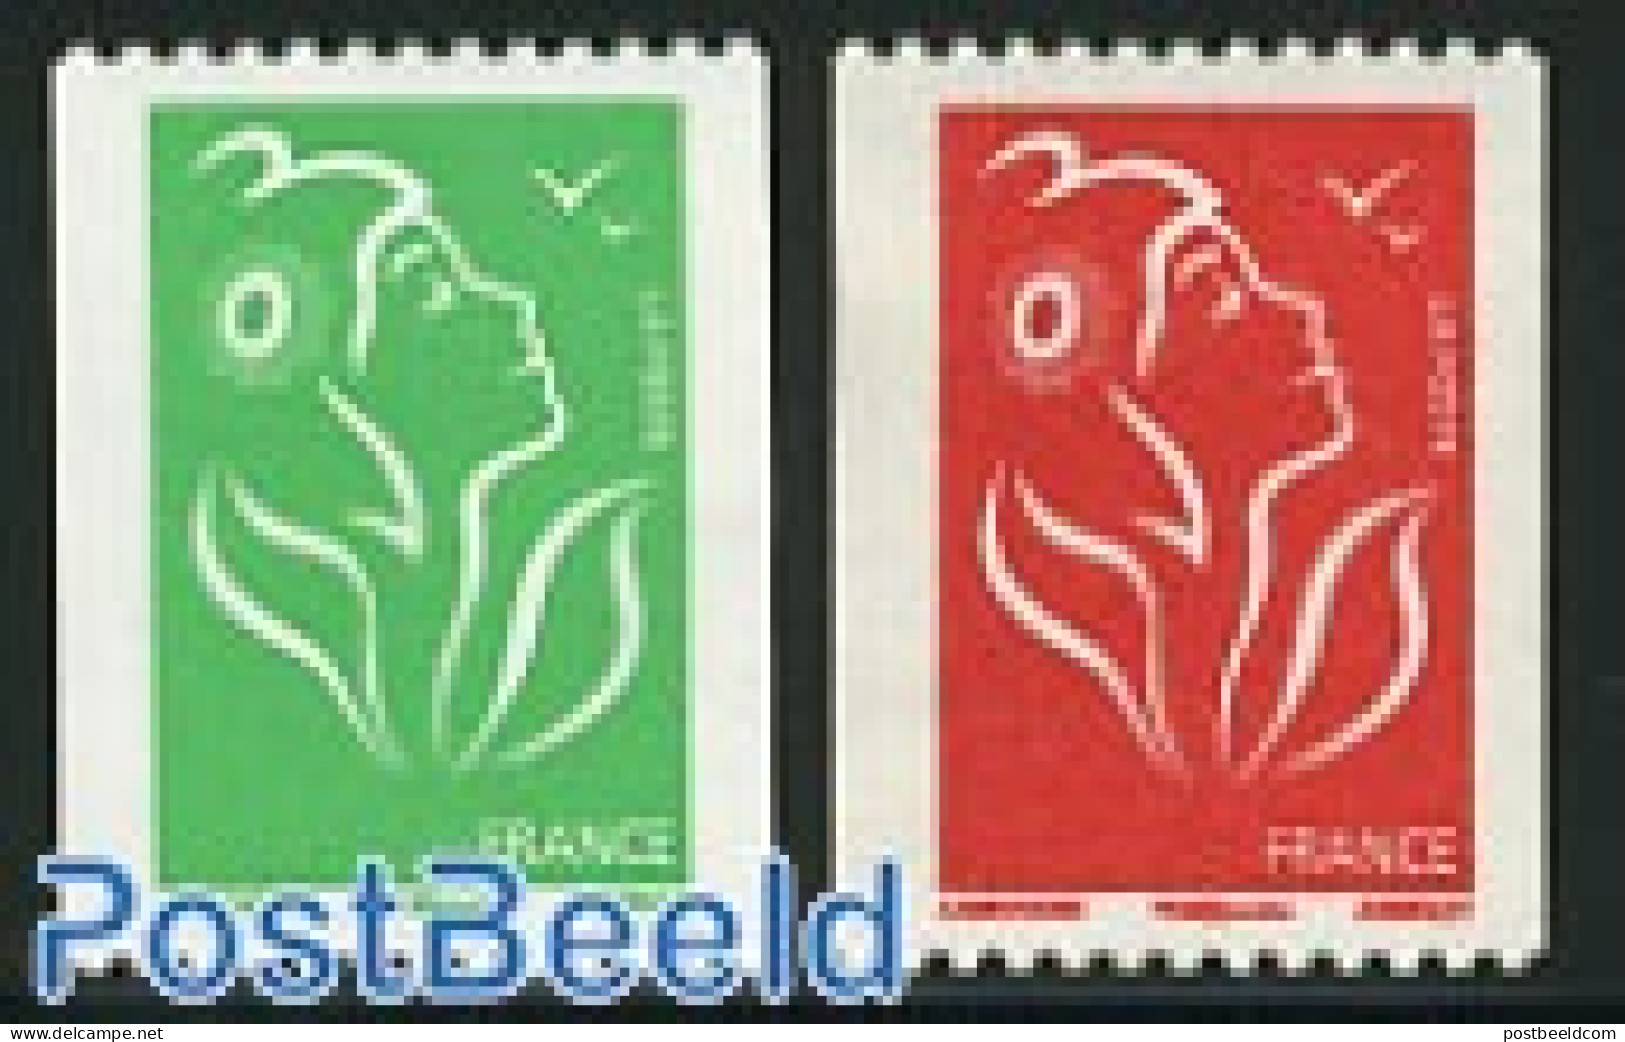 France 2007 Definitives 2v, Coil Stamps, Mint NH - Ungebraucht